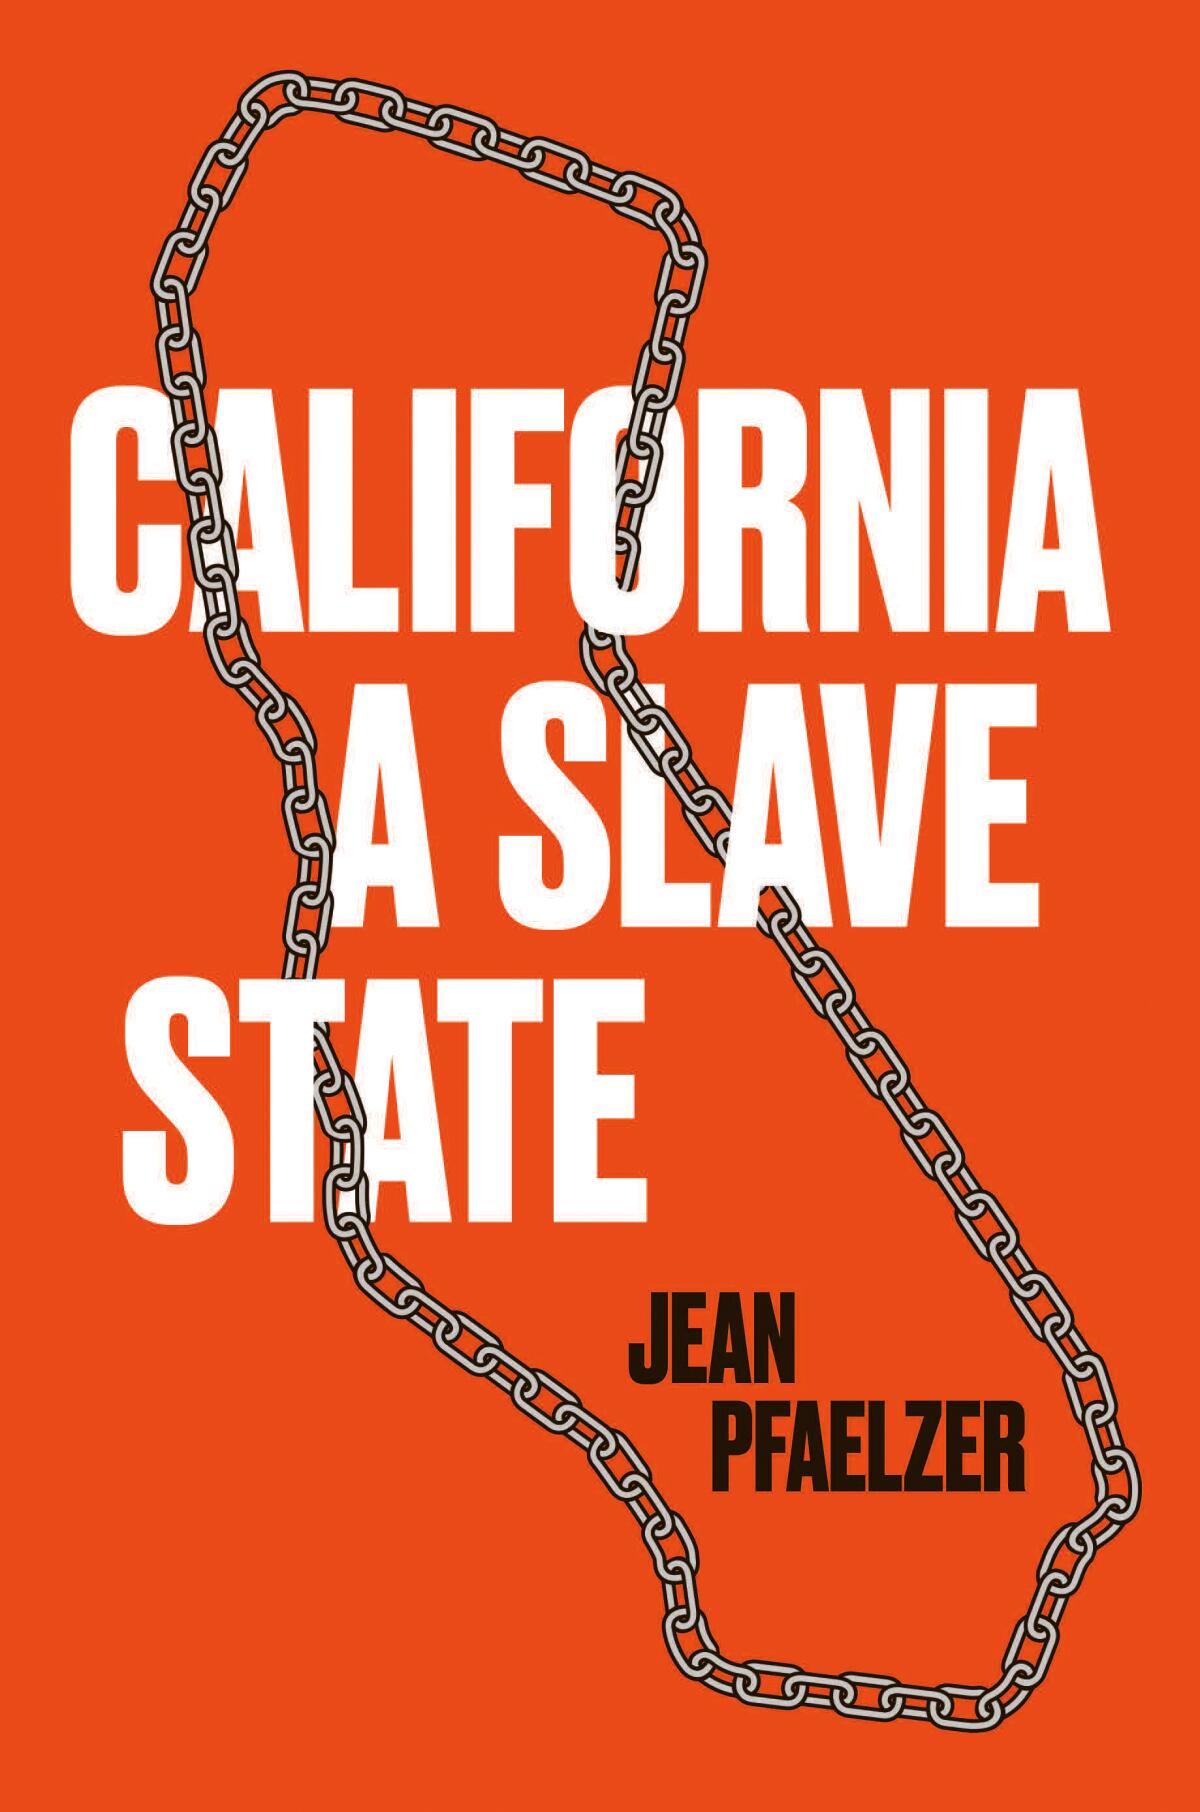 'California, a Slave State' by Jean Pfaelzer